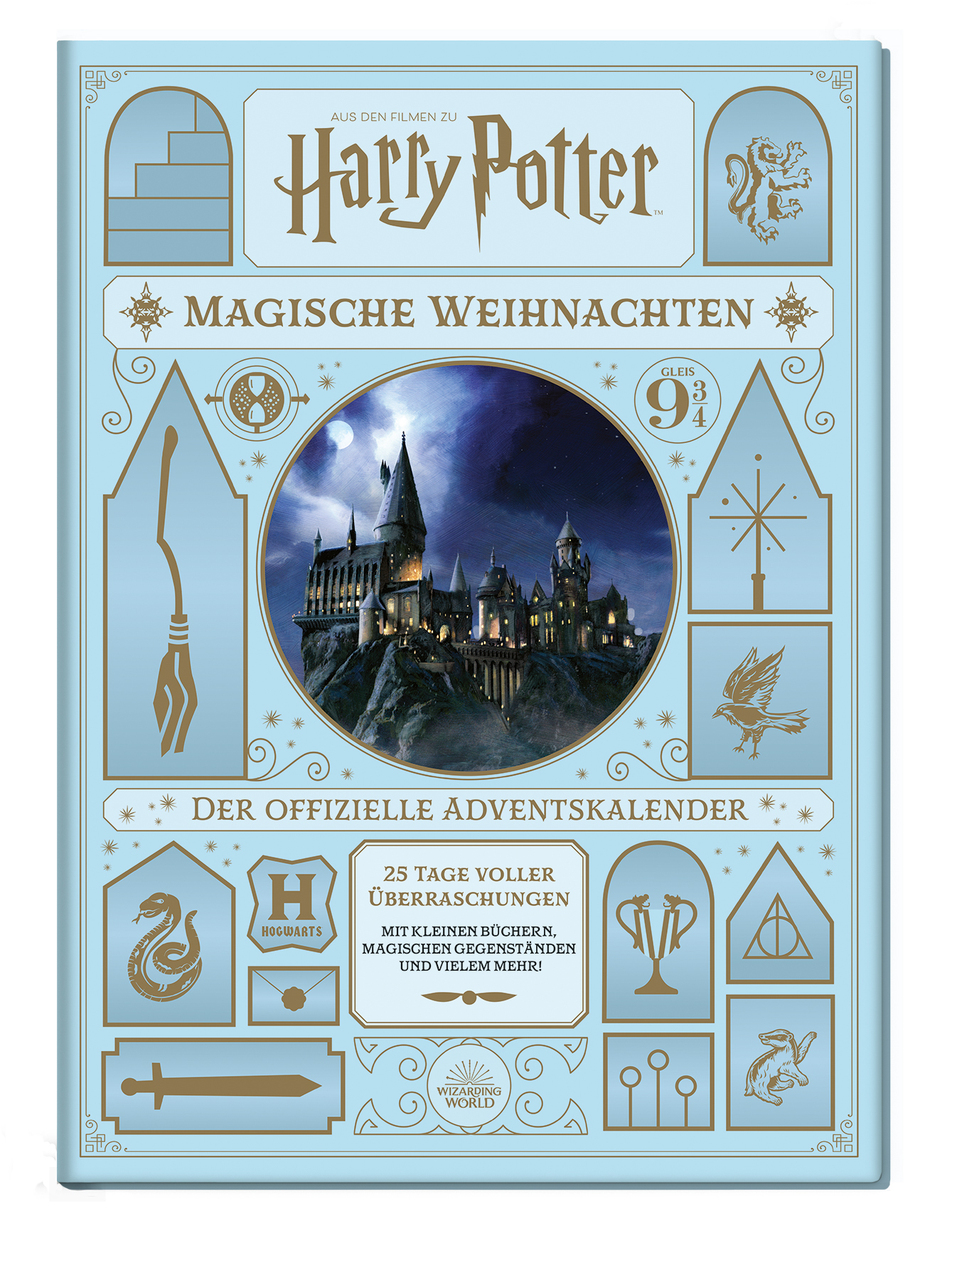 Aus den Filmen zu Harry Potter Magische Weihnachten   Der offizielle  Adventskalender von Panini gebundenes Buch